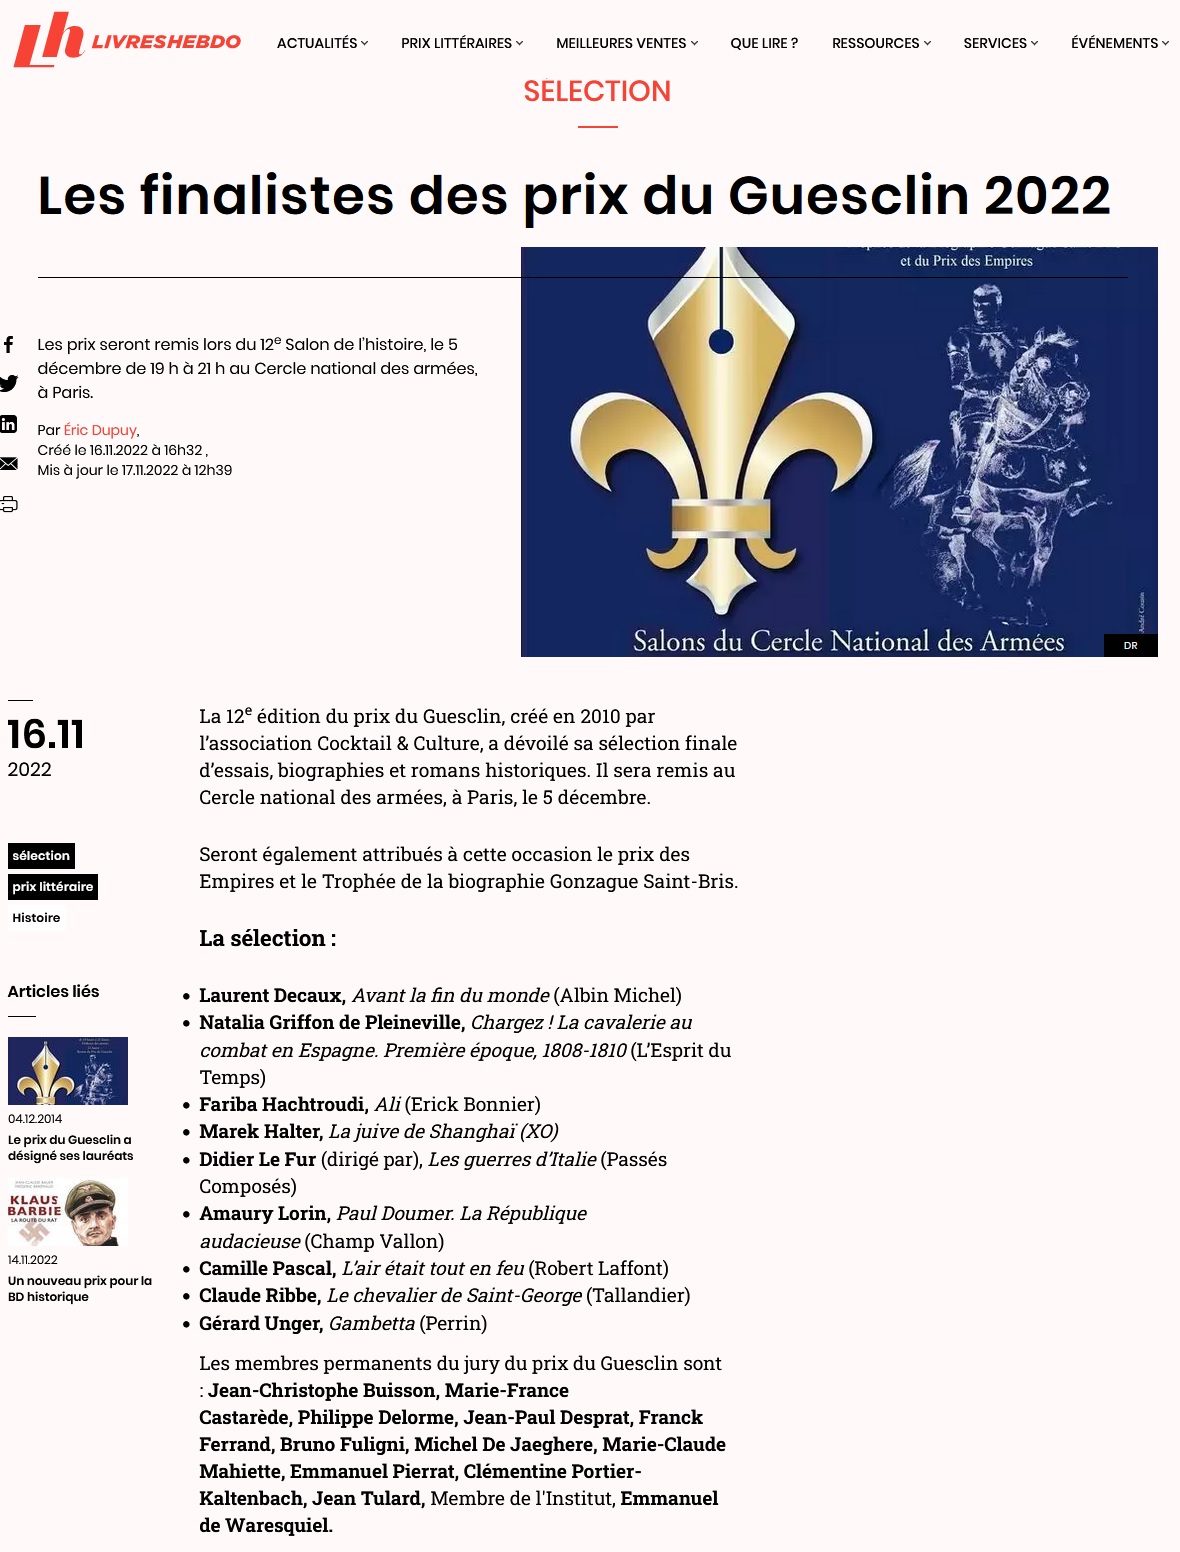 Article Livres Hebdo Finalistes Prix du Guesclin 2022